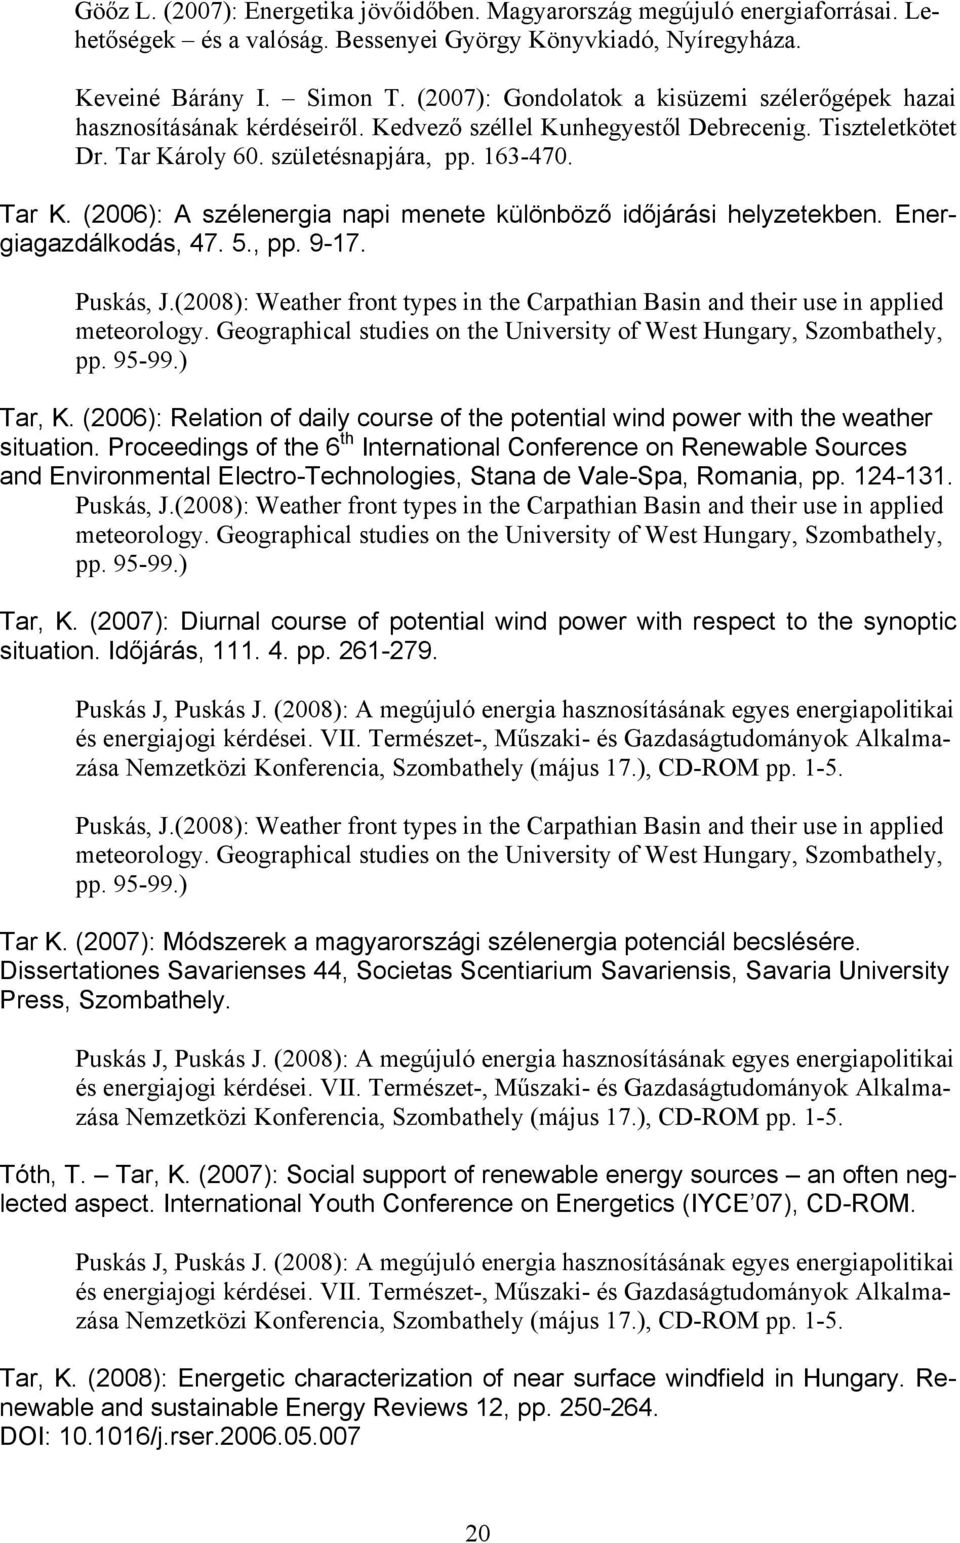 roly 60. születésnapjára, pp. 163-470. Tar K. (2006): A szélenergia napi menete különböző időjárási helyzetekben. Energiagazdálkodás, 47. 5., pp. 9-17. Puskás, J.